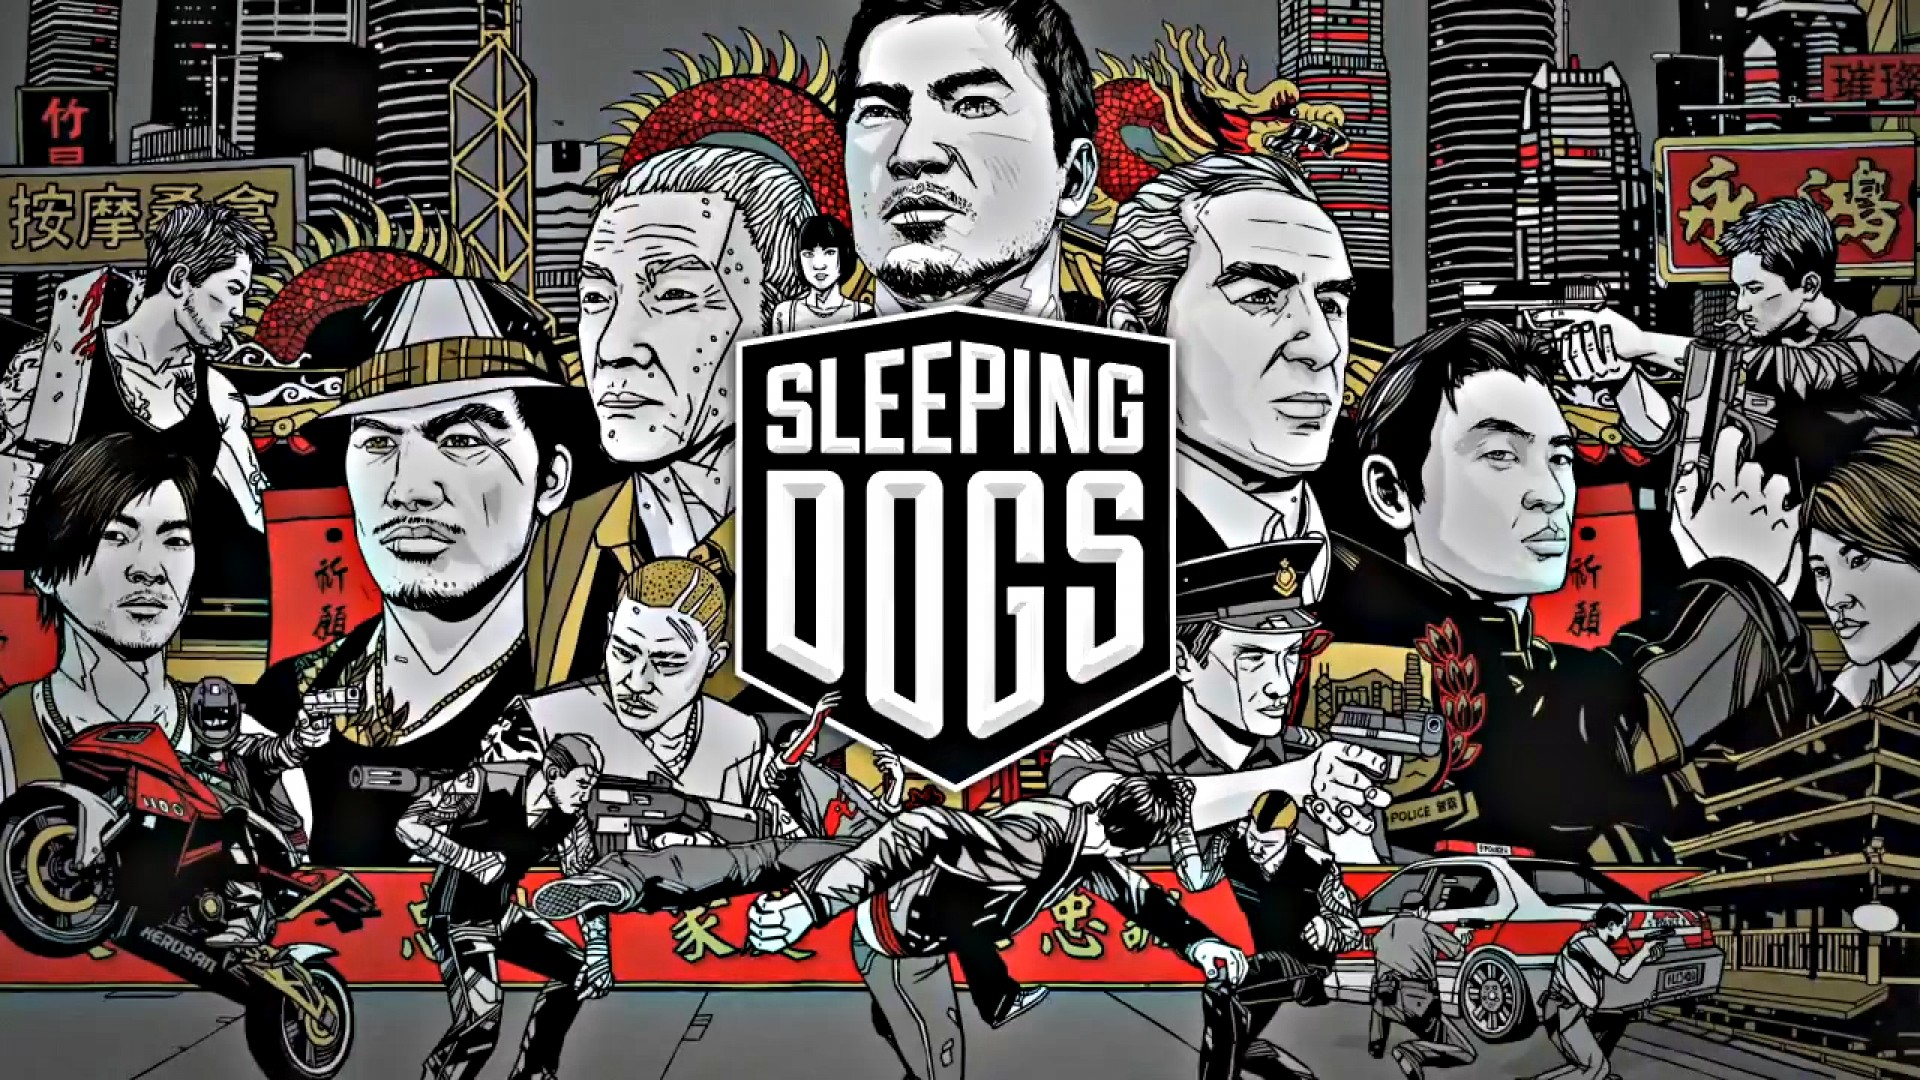 Sleeping Dogs Sistem Gereksinimleri